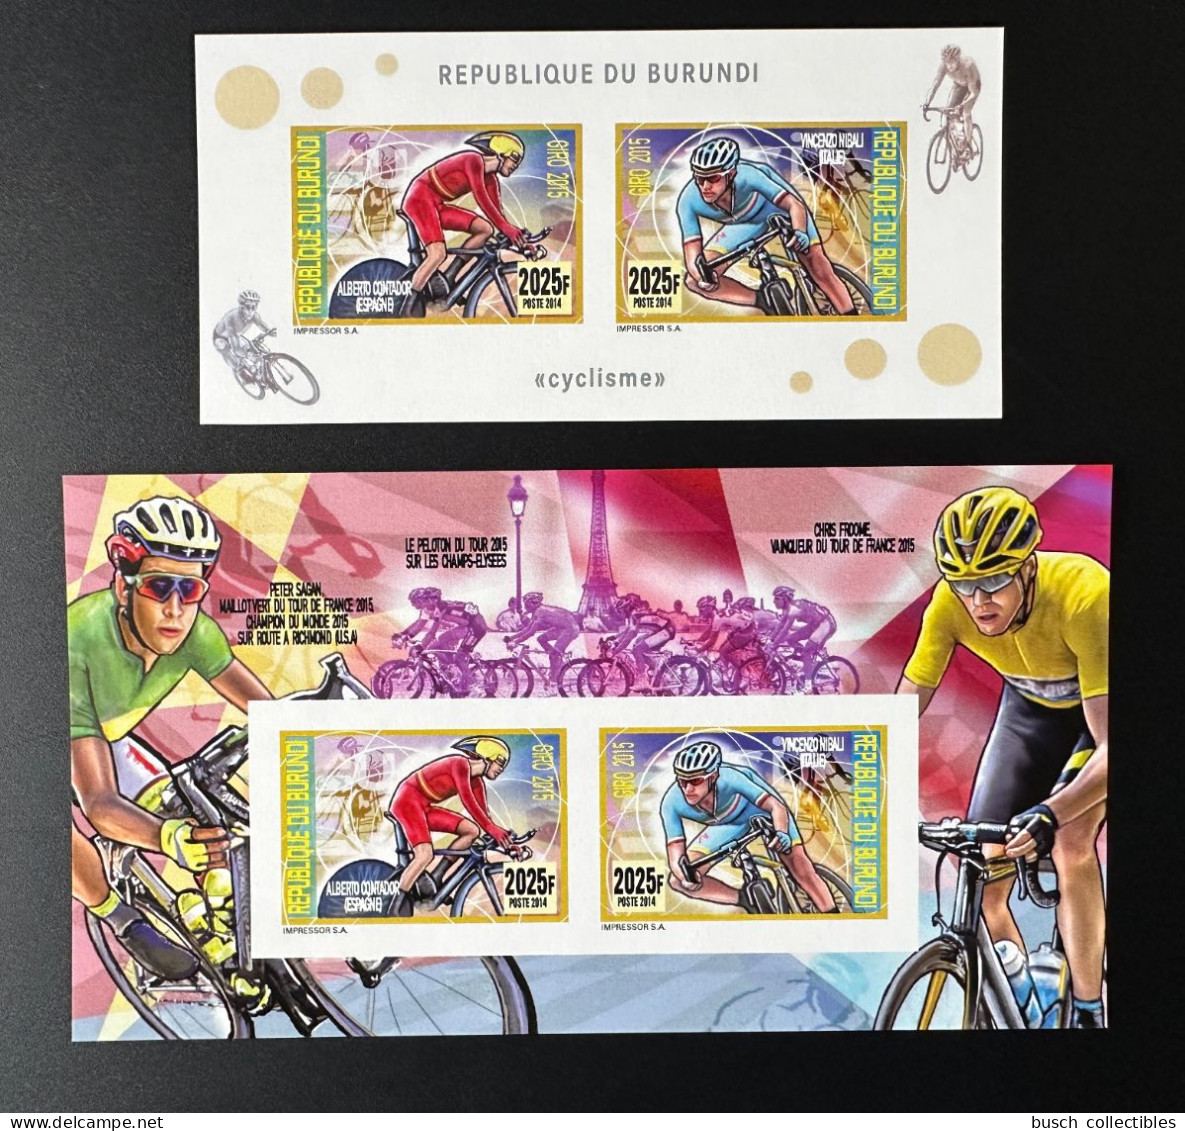 Burundi 2014 / 2015 Mi. 3483 - 3484 Bl. 504 - 505 ND IMPERF Cyclisme Cycling Rad Vélo Fahrrad Bicycle Tour France Eiffel - Radsport